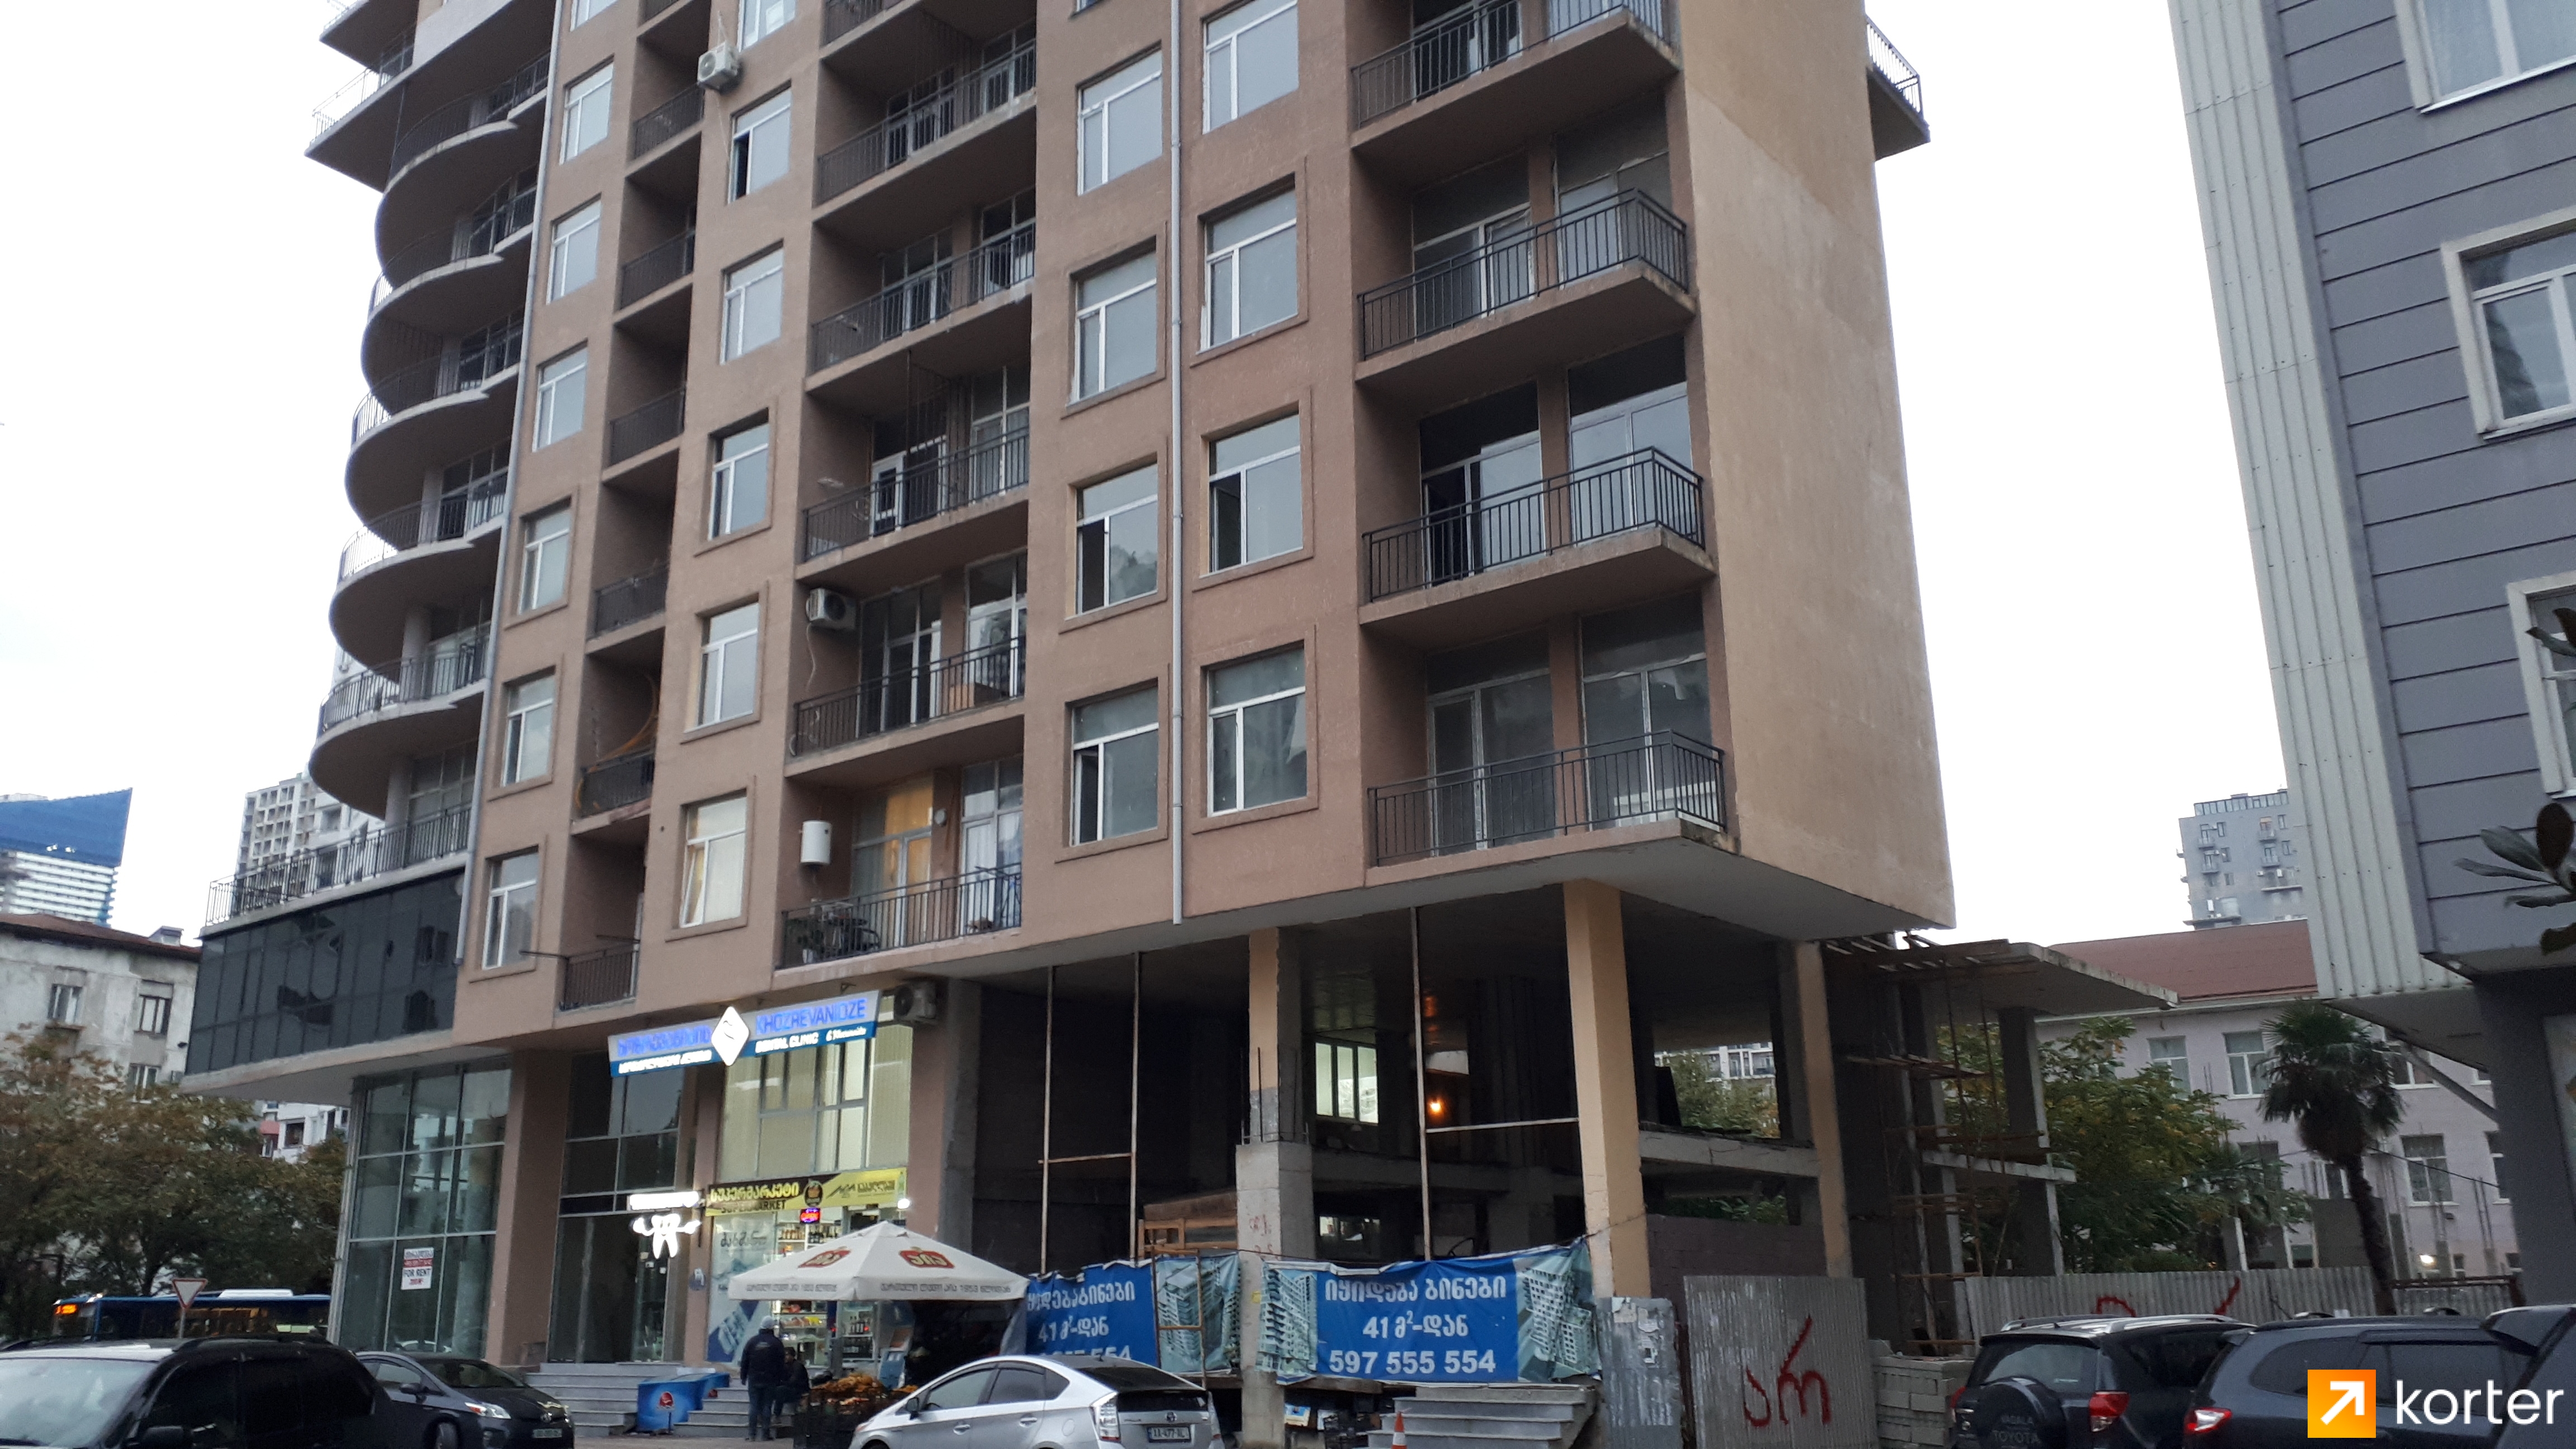 Construction progress House on Gorgasali and Javakhishvili - Angle 6, October 2021